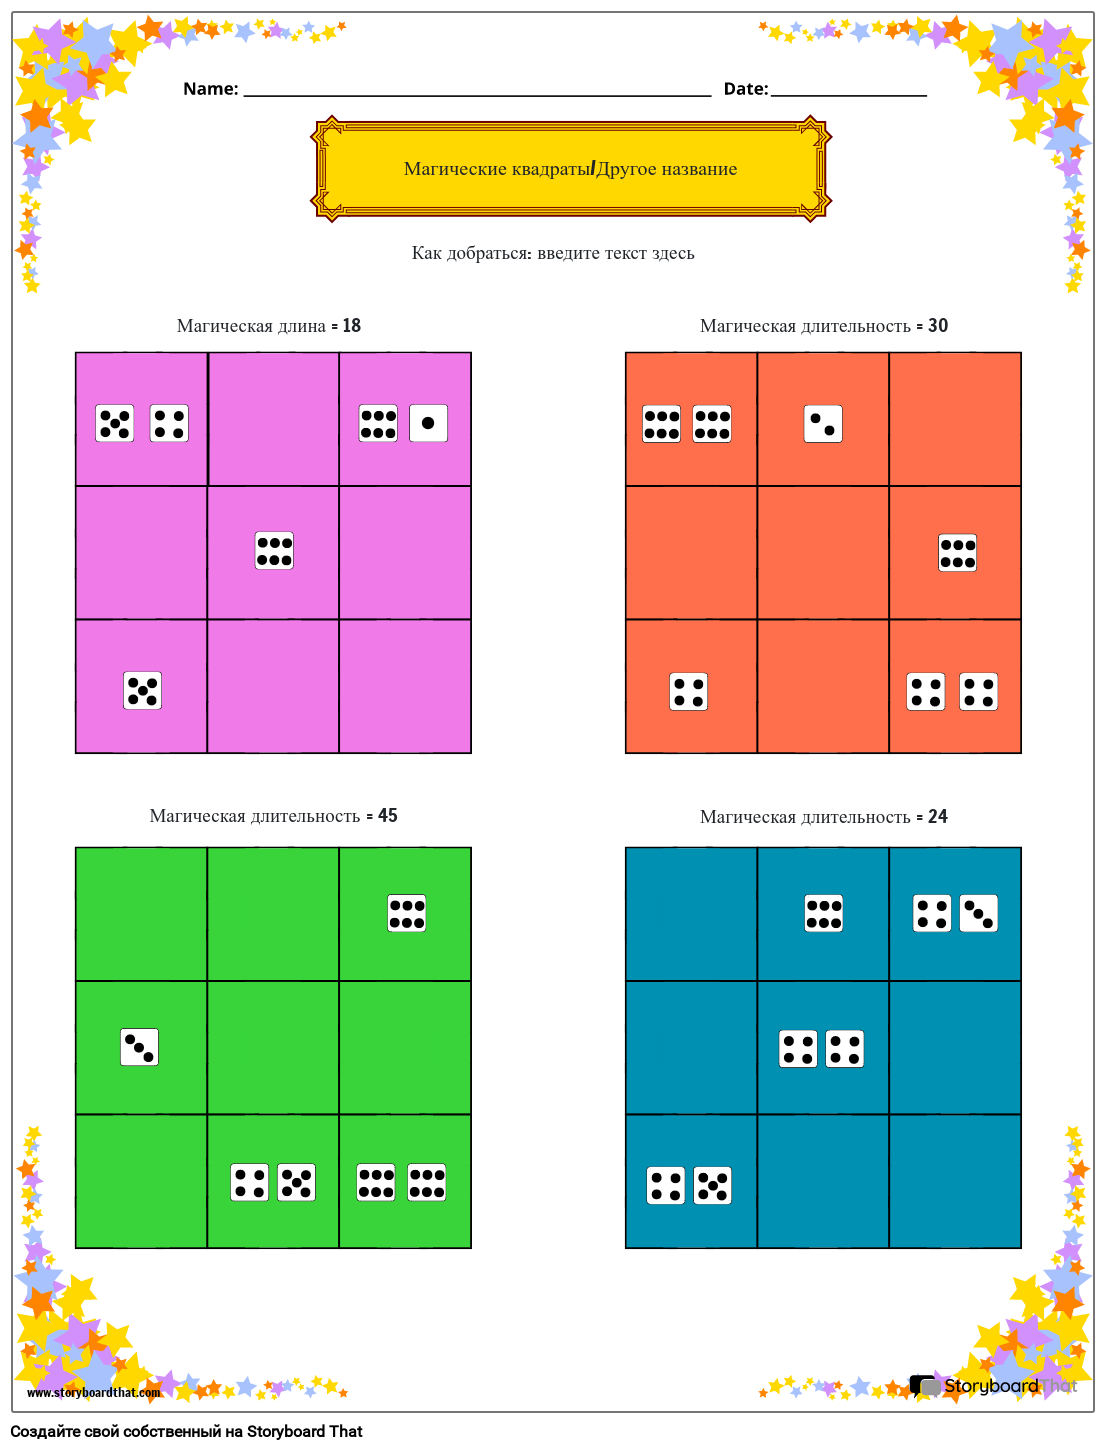 Рабочий лист магических квадратов подсчета кубиков со звездной темой